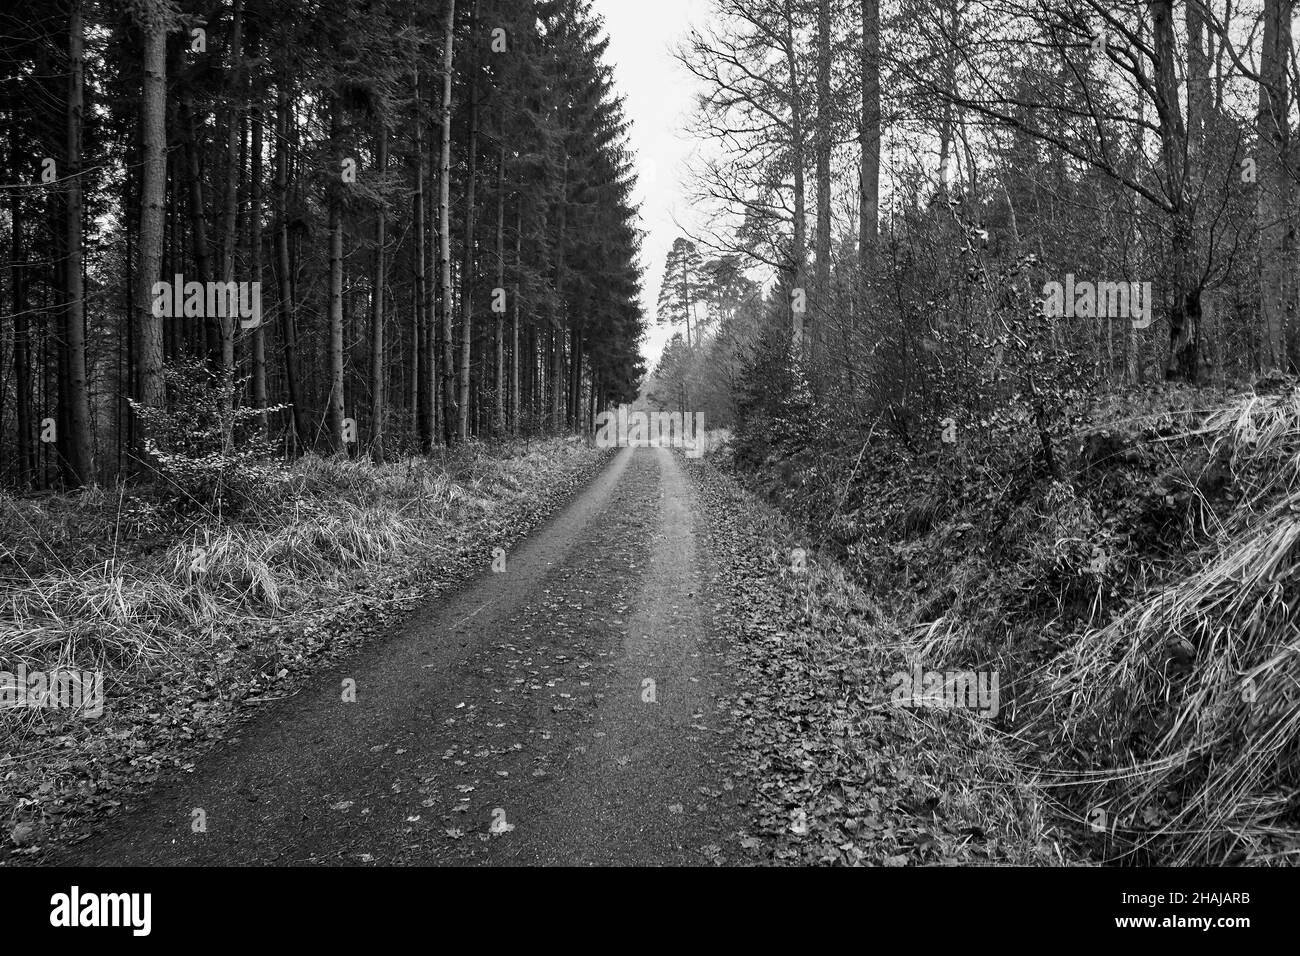 Forest road in winter at Diebskarren hiking trail, Sindelfingen, Germany. Stock Photo